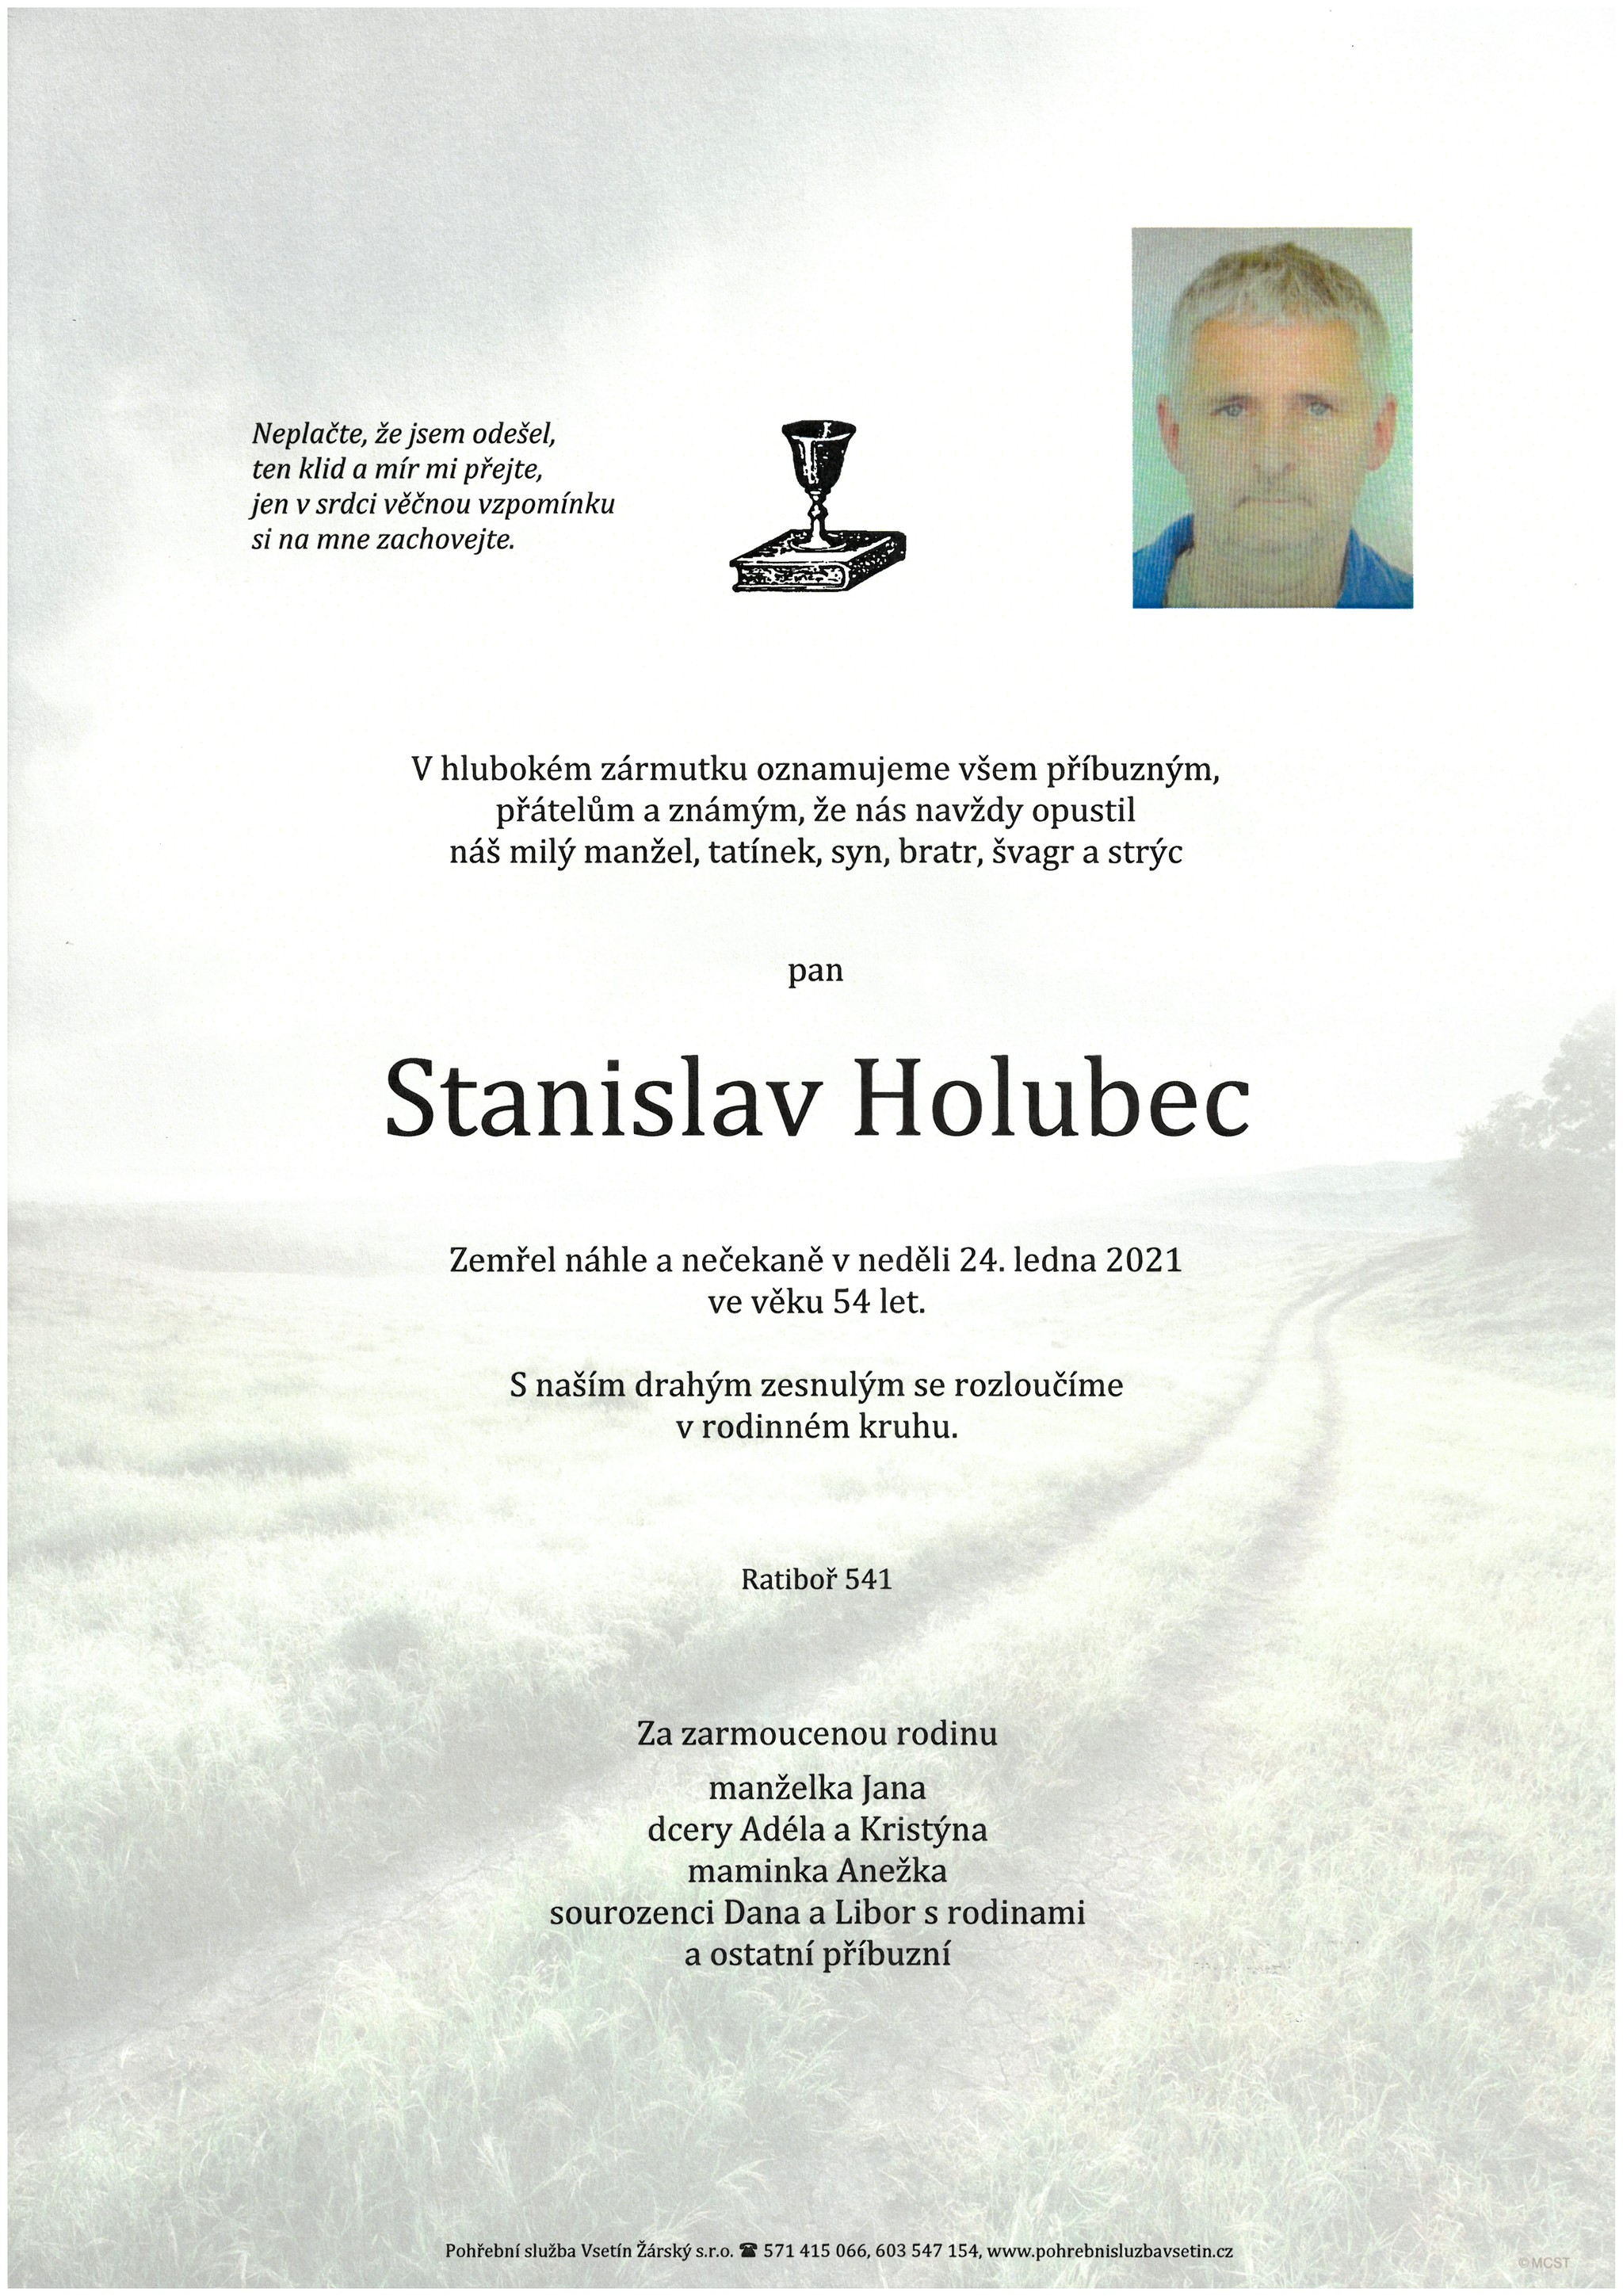 Stanislav Holubec